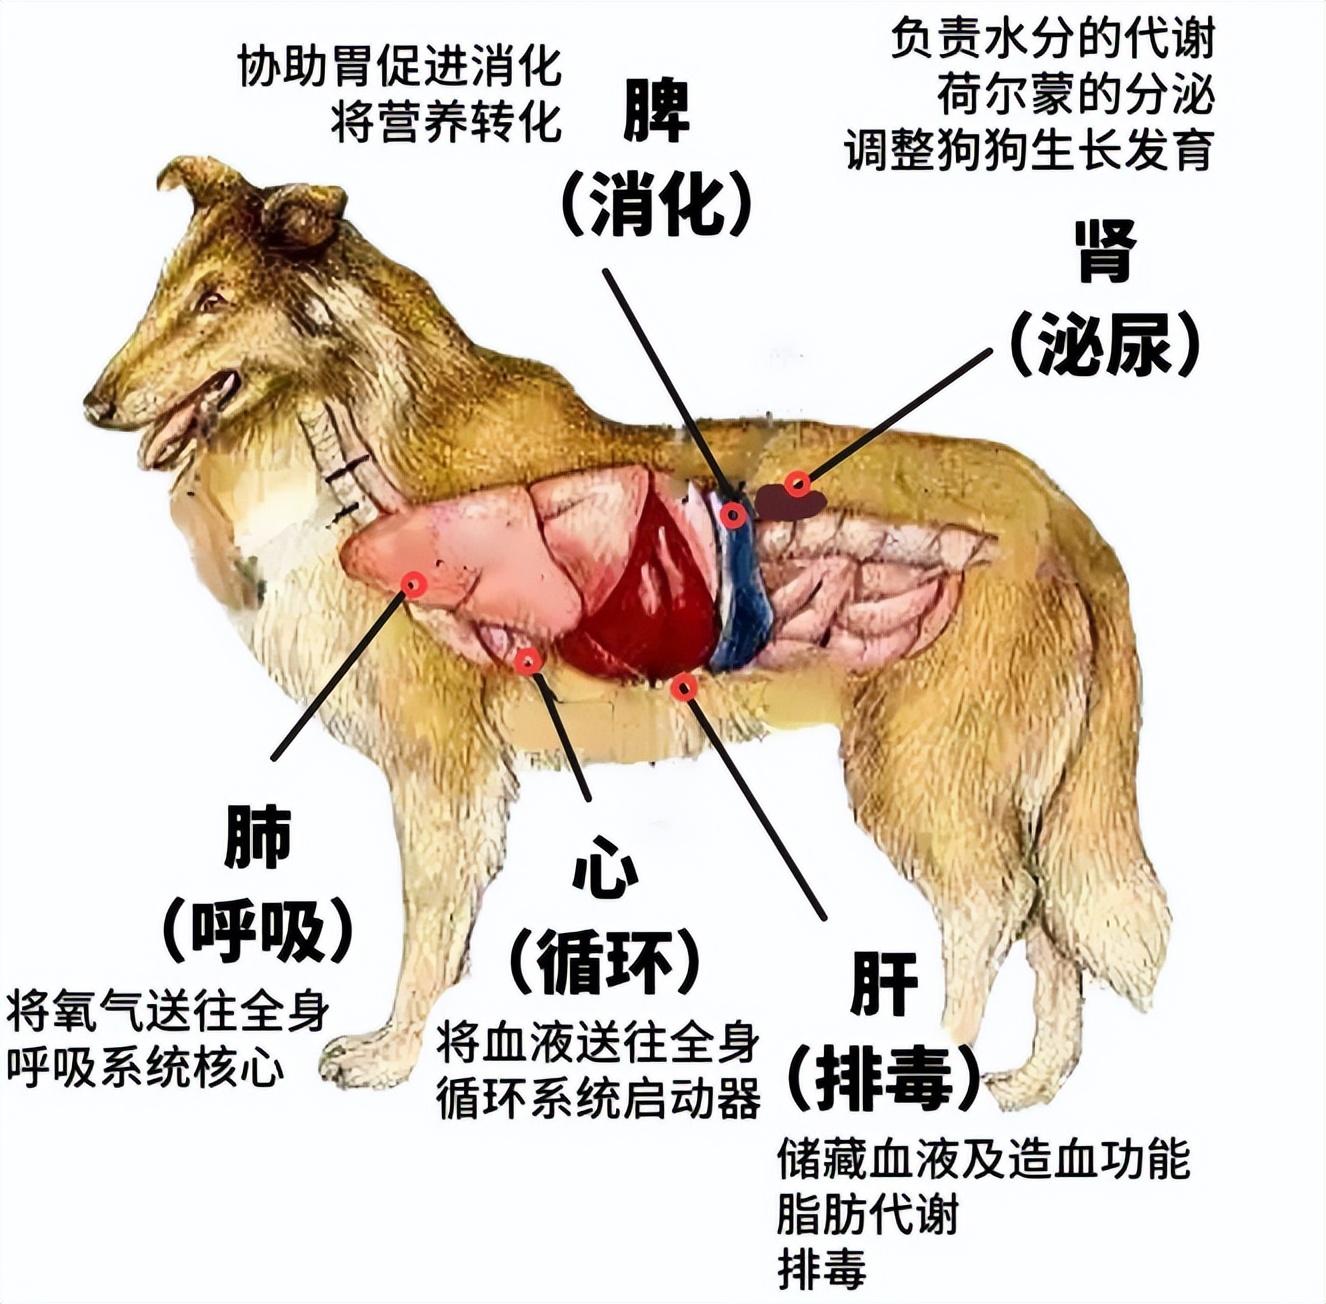 狗能吃吃香菇饺子吗,为什么不能吃,对狗狗有益的食物有哪些